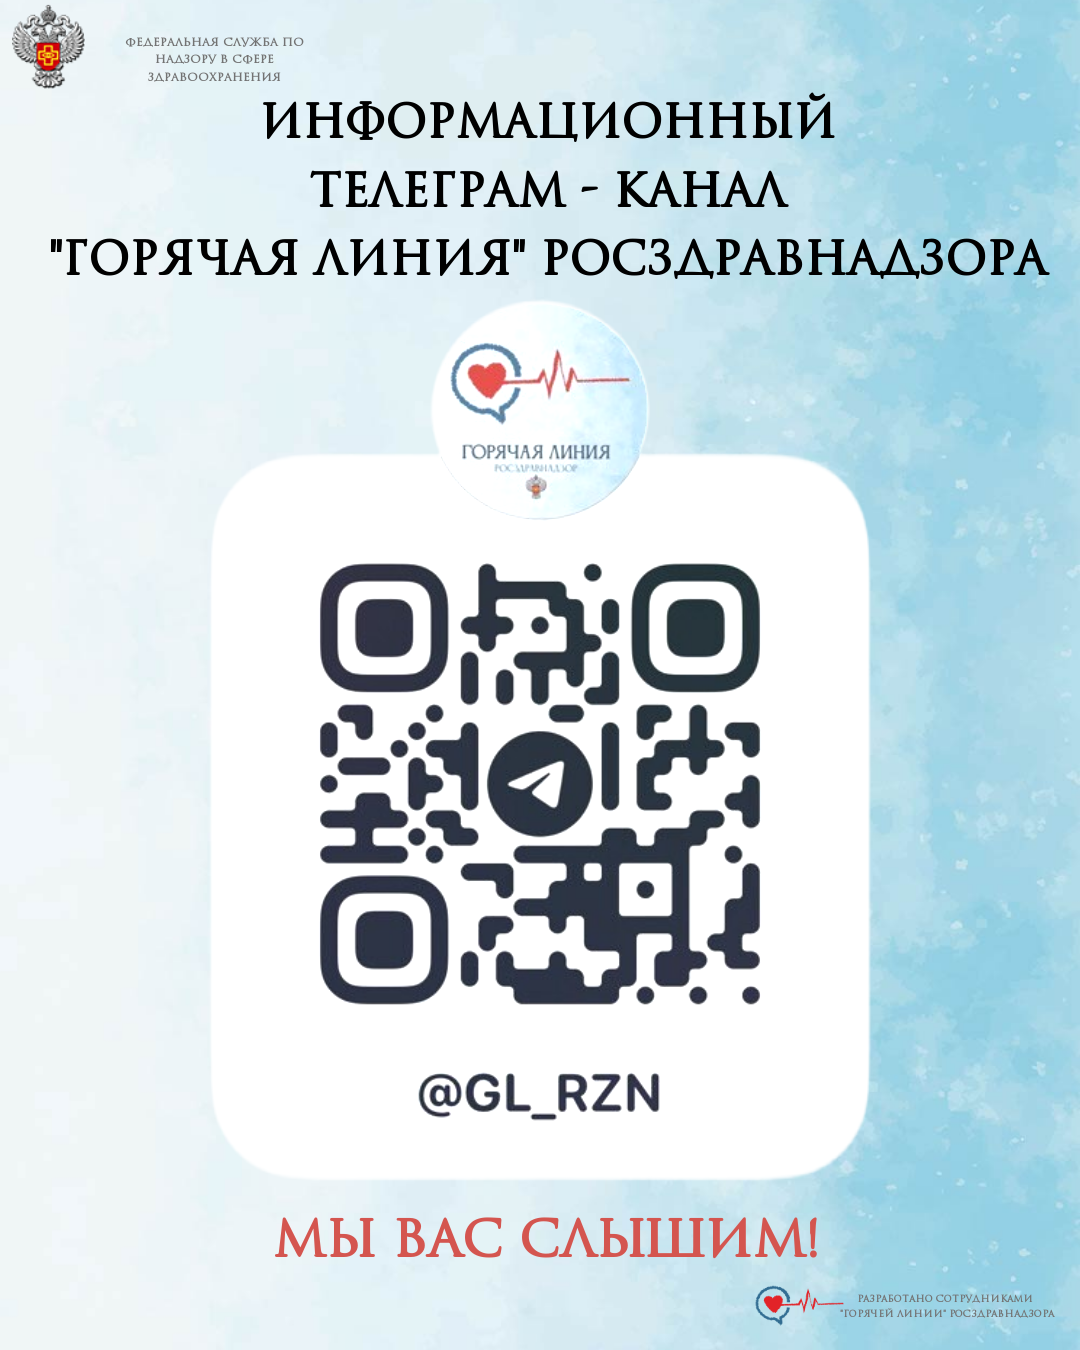 Информационный телеграм-канал «Горячая линия» Росздравнадзора.